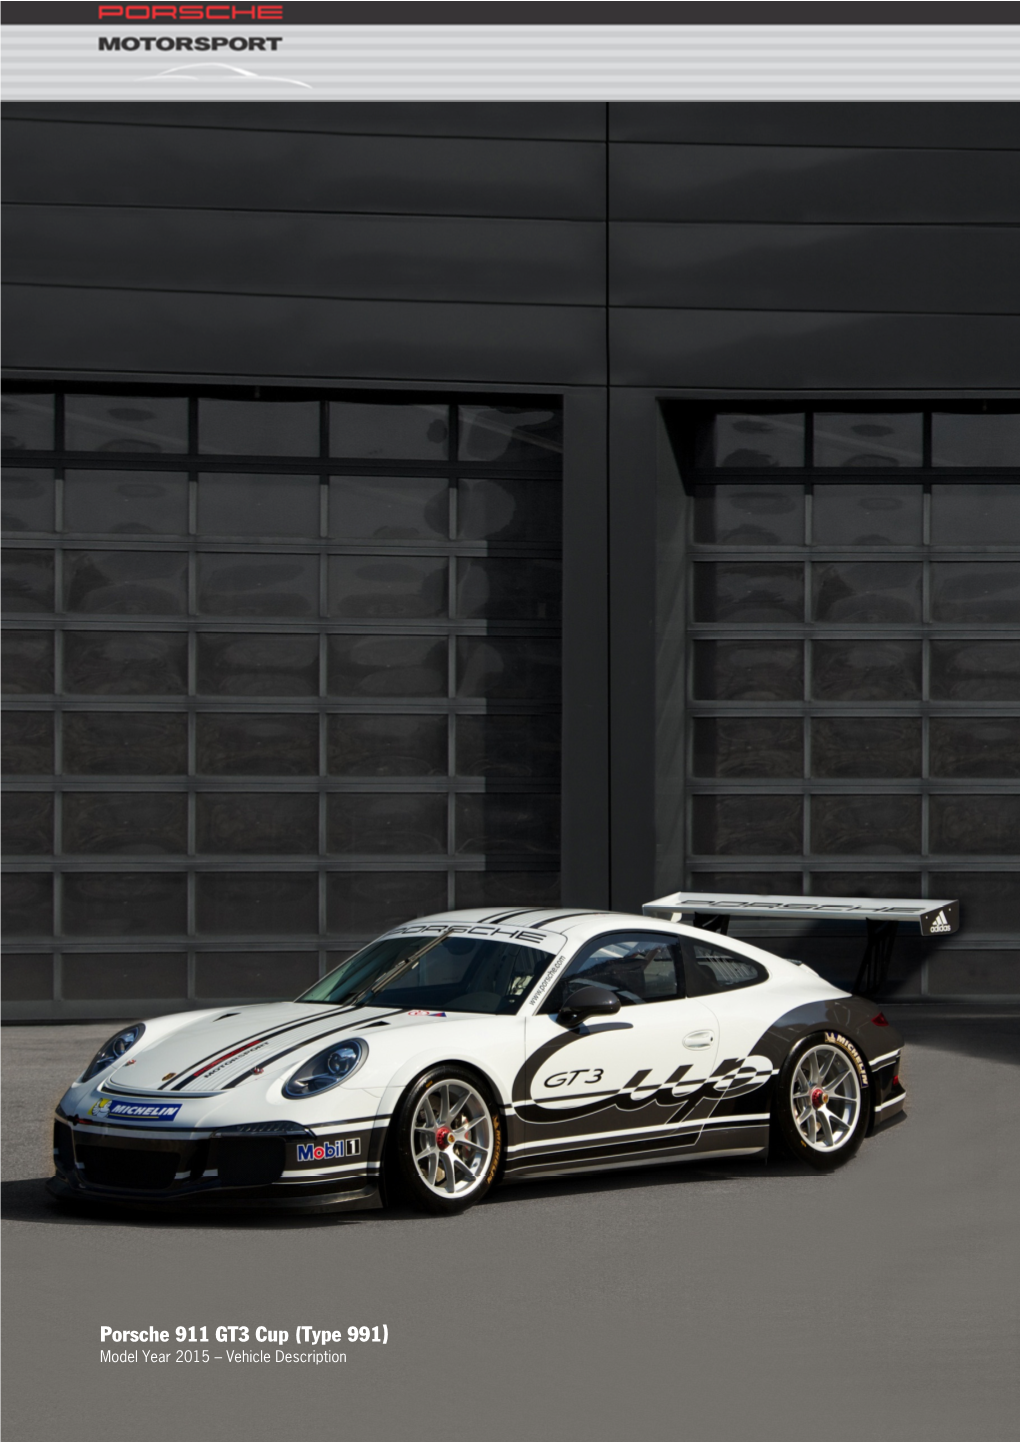 Porsche 911 GT3 Cup (Type 991) Model Year 2015 – Vehicle Description Concept